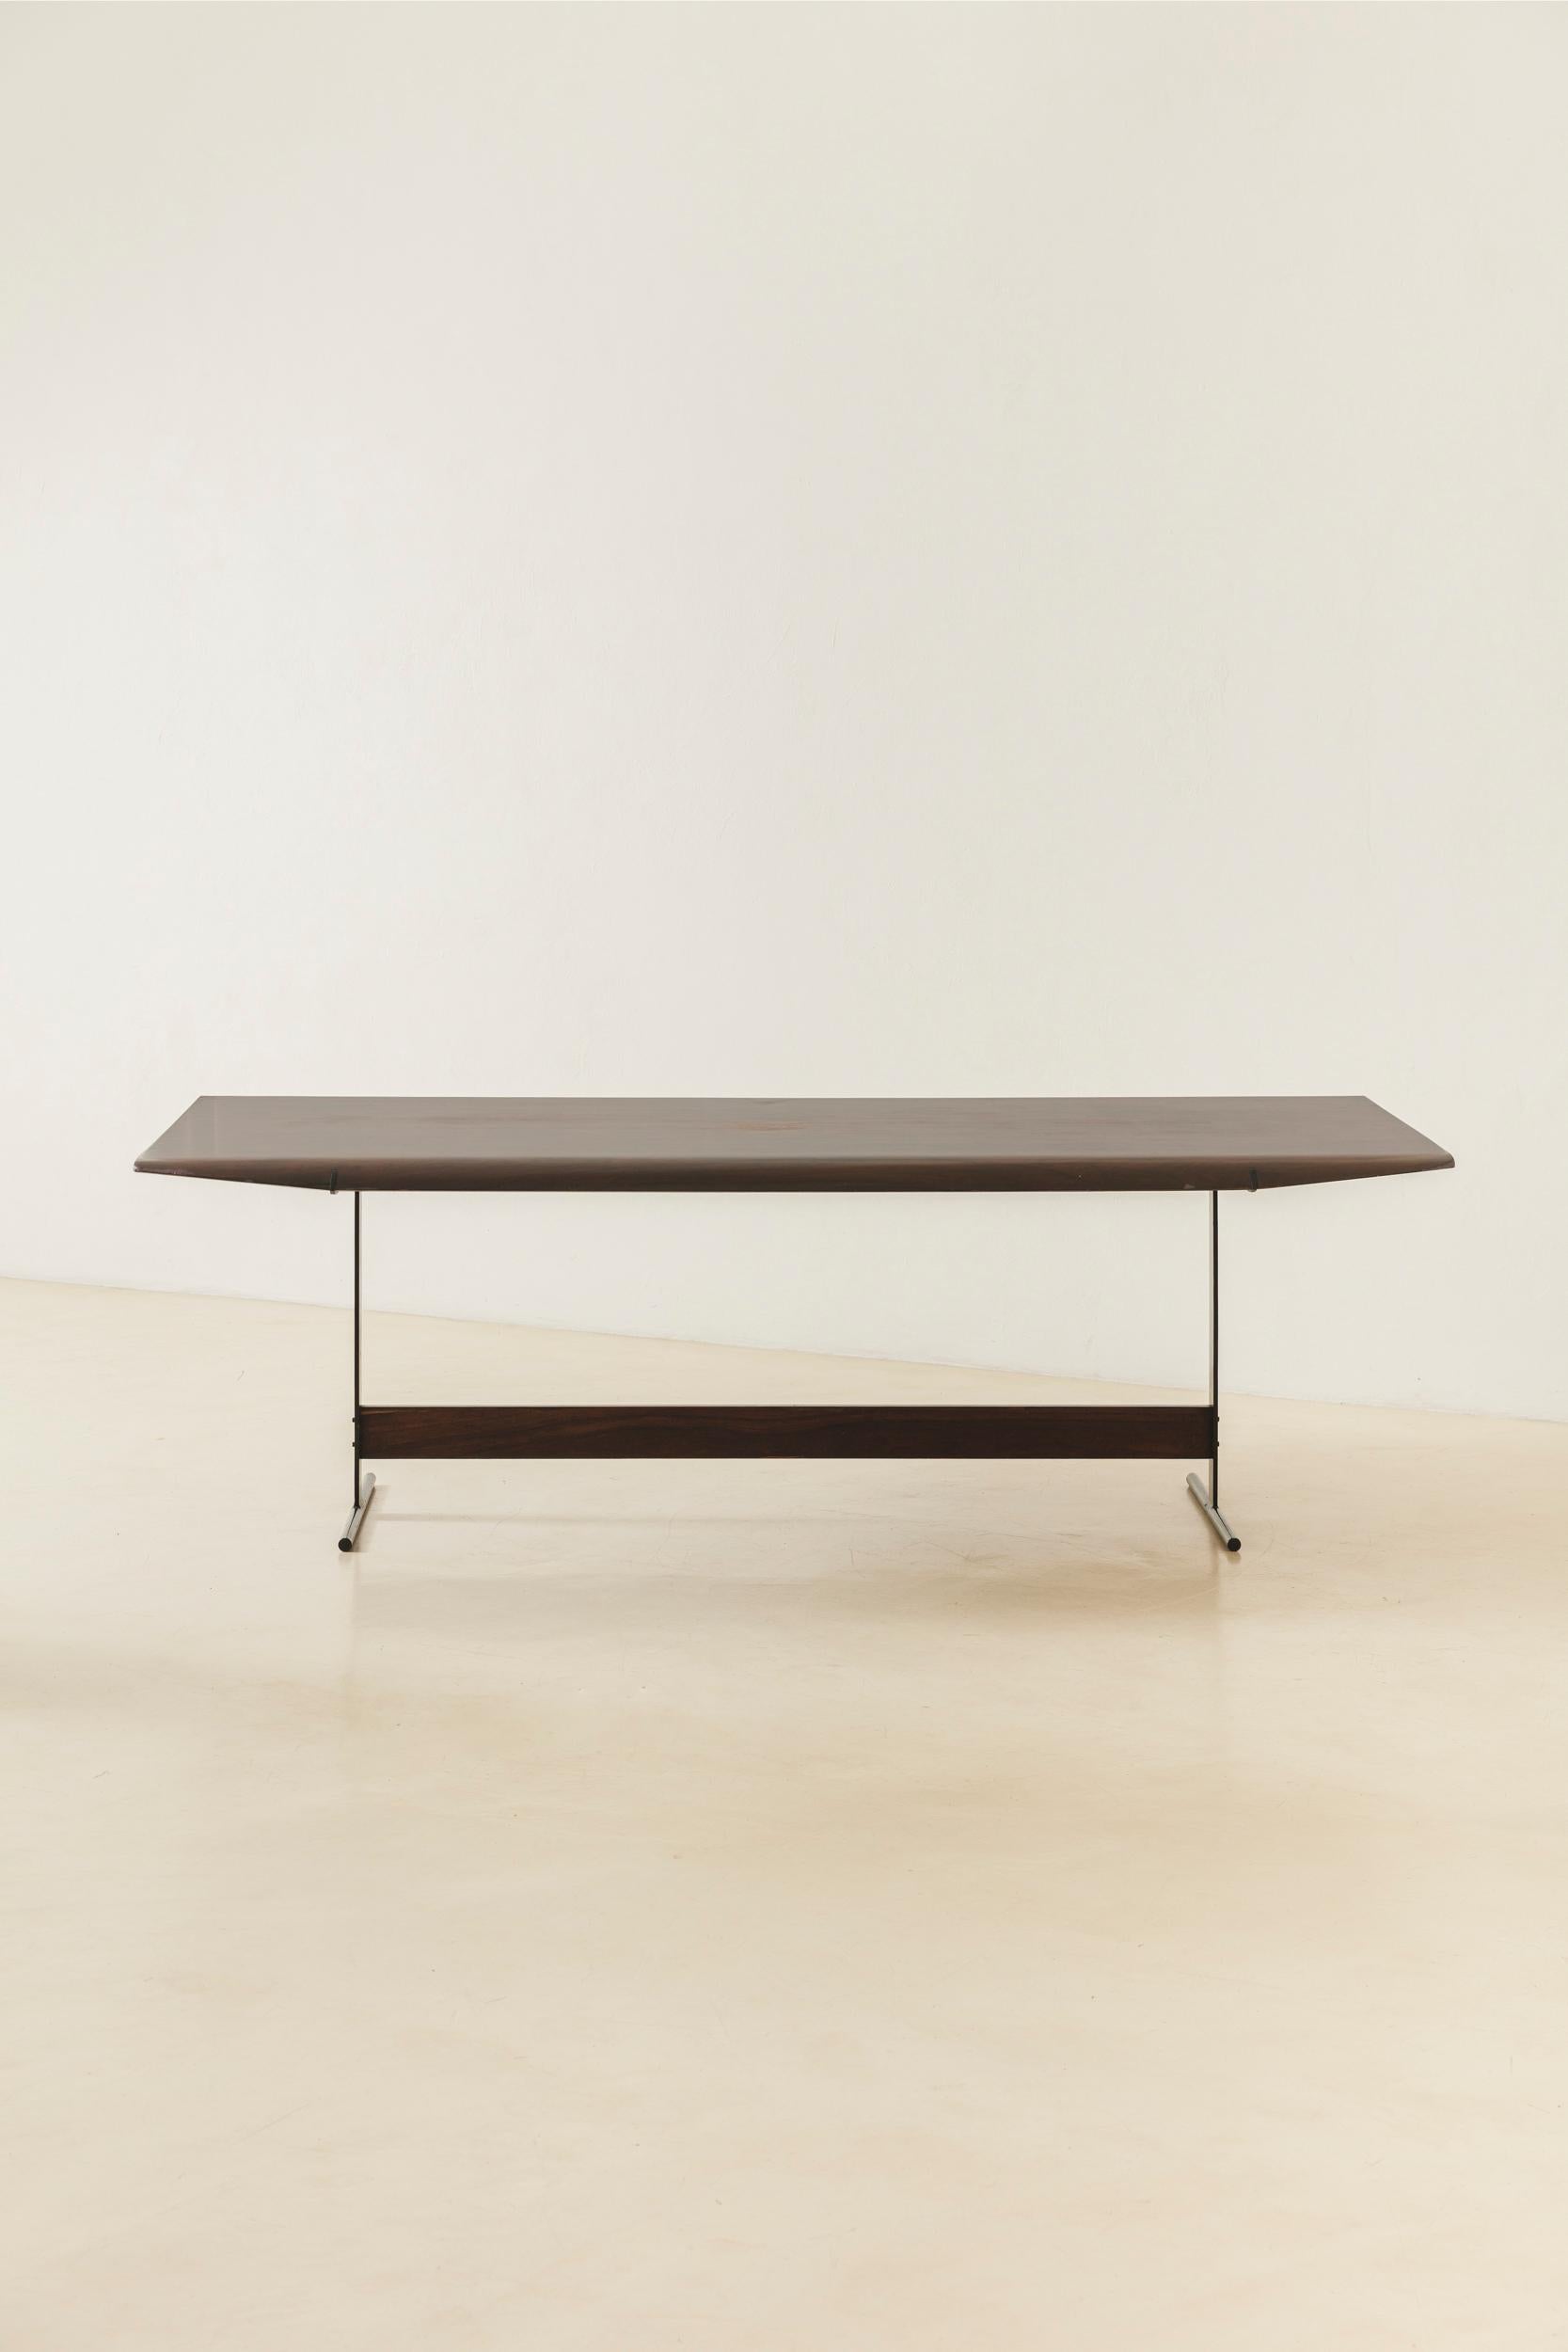 La table à manger ME 511 a été conçue par Jorge Zalszupin (1922-2020) en 1959 et produite par son entreprise, L'atelier. Les pièces sont fabriquées en bois de rose et en structures de fer. Le point fort est le plateau en bois de rose stratifié